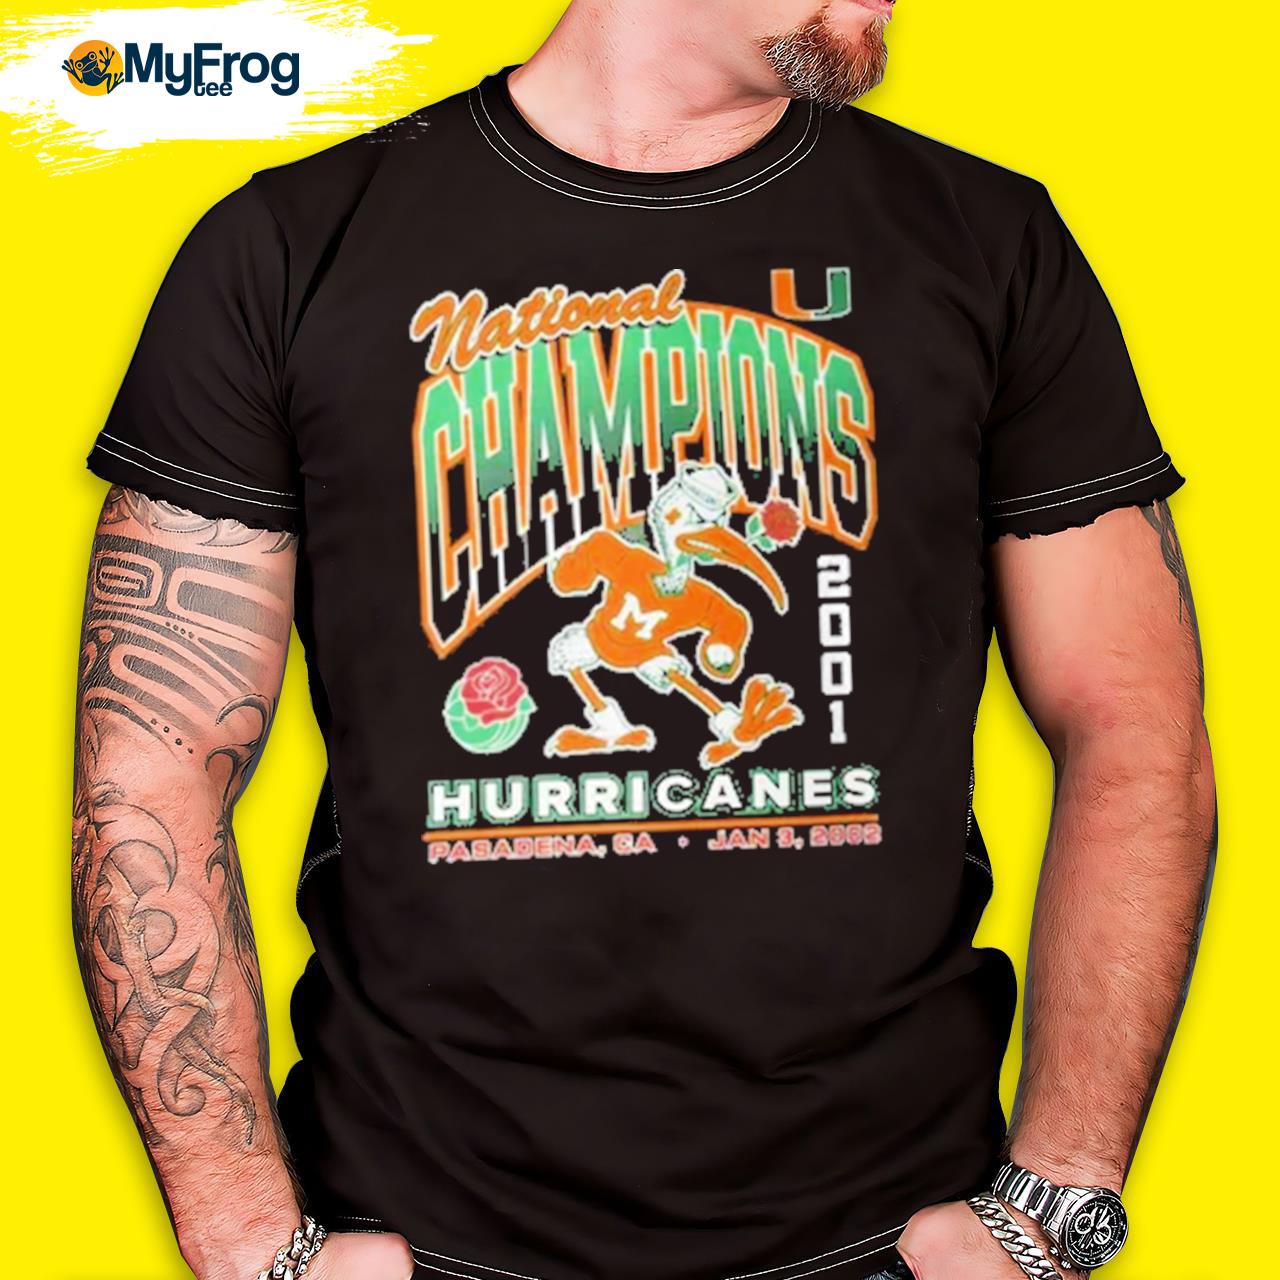 Vintage Miami Hurricanes 2001 National Champions Pasadena, Ca Jan 3, 2022  Shirt